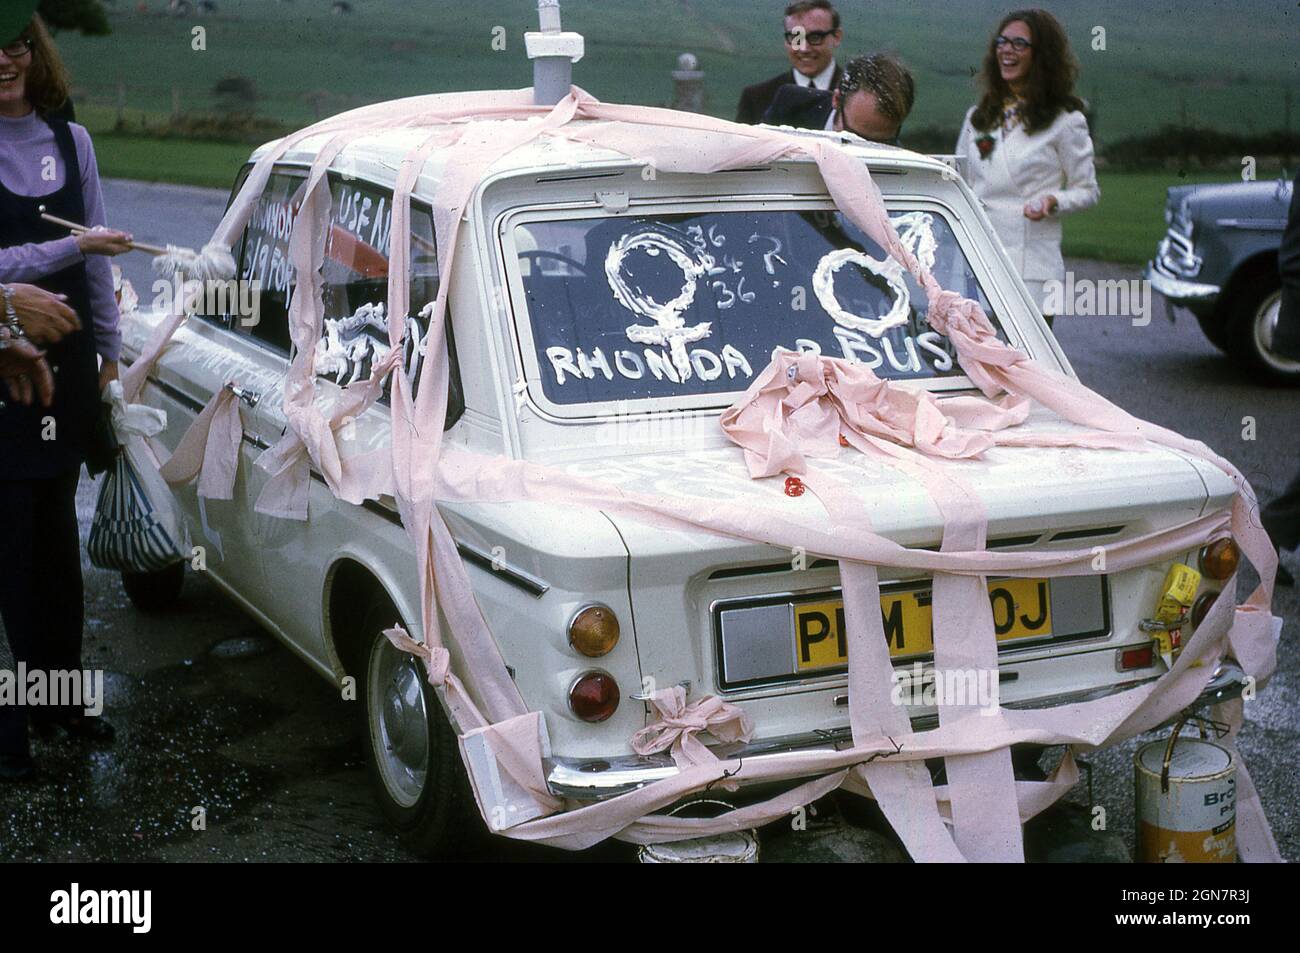 1970, November, ein geschmückter Hochzeitswagen, ein weißer Hillman Imp, mit pinken Bändern und Blechdosen, die an der hinteren Stoßstange befestigt sind, mit Schriftzug auf der hinteren Windschutzscheibe, Rhonda oder Bust, England, Großbritannien. Stockfoto